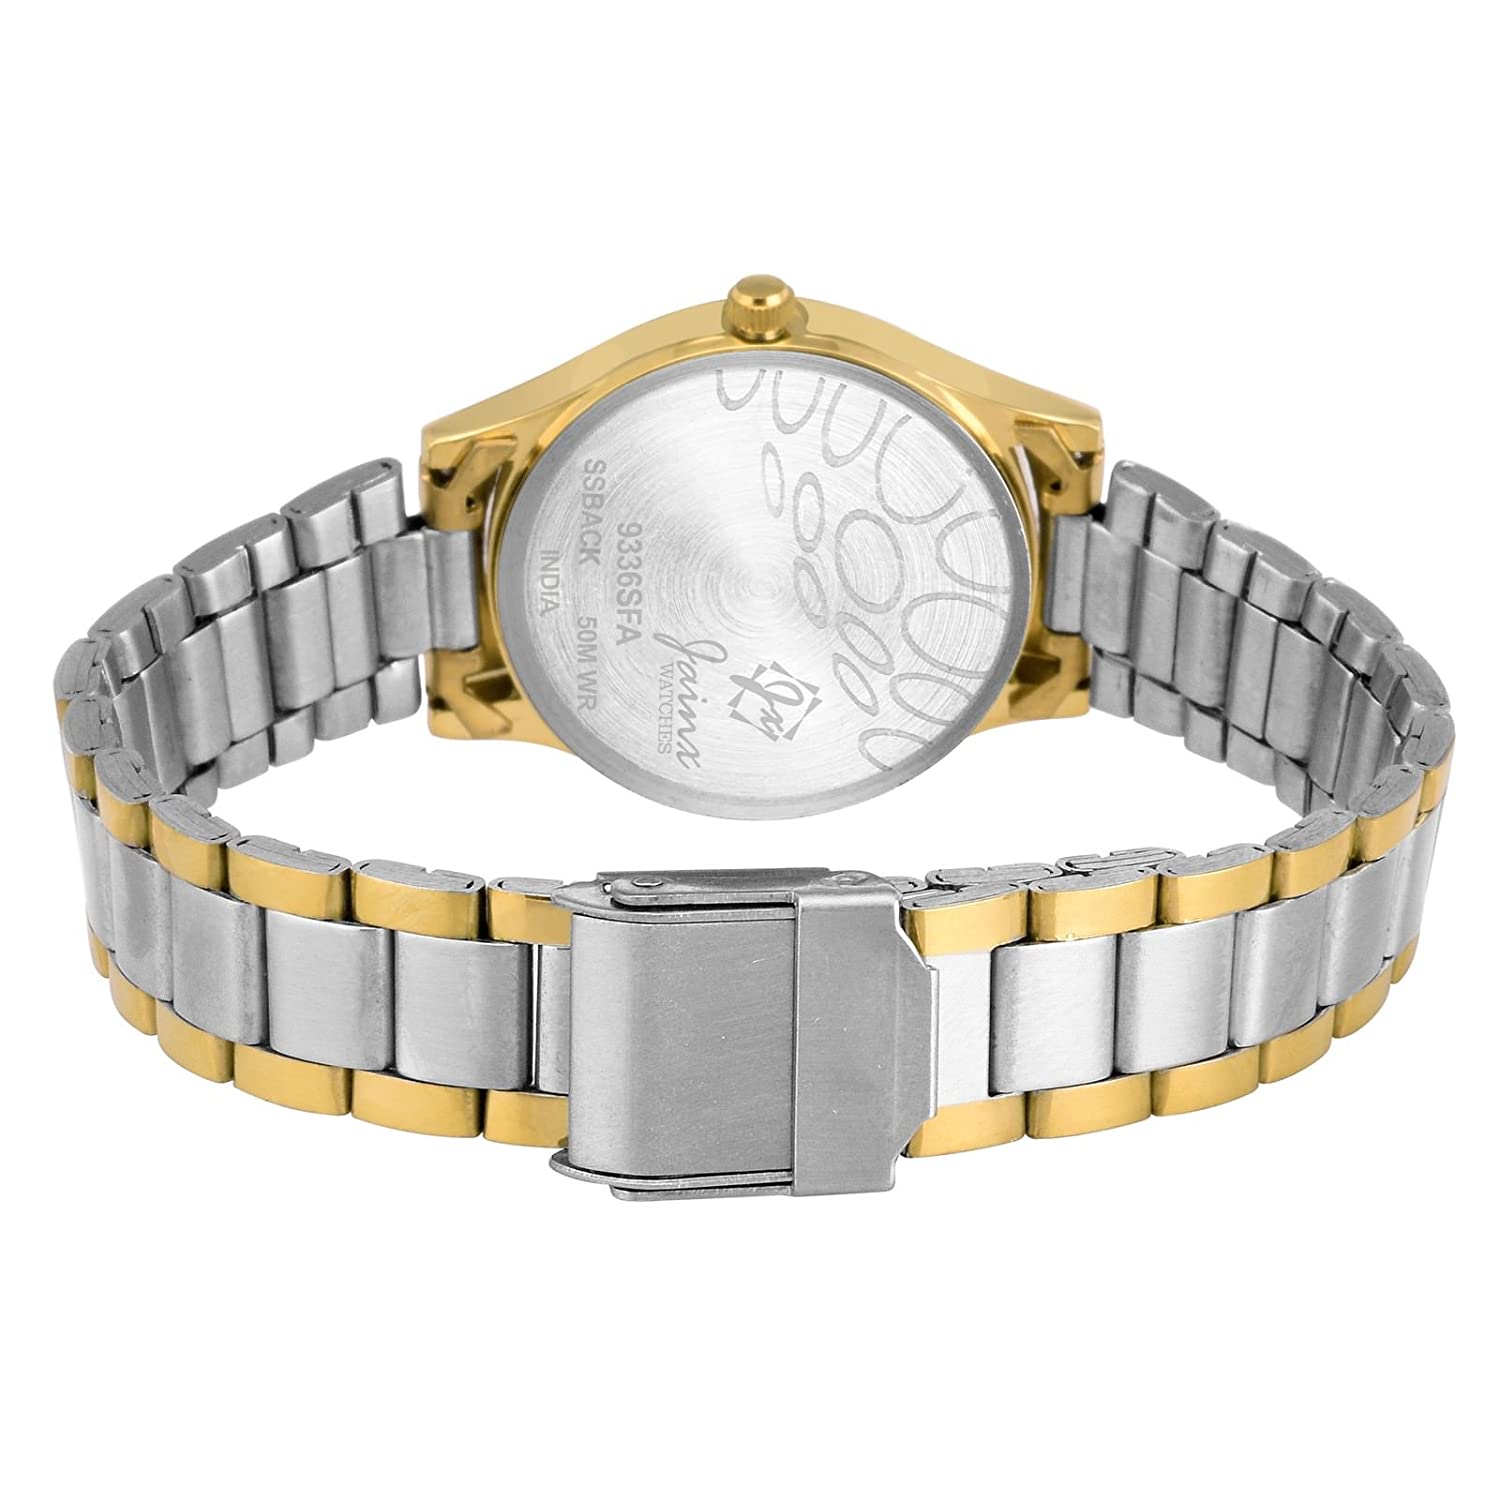 Premium Golden Analog Watch - For Women JW1201 - Jainx Store